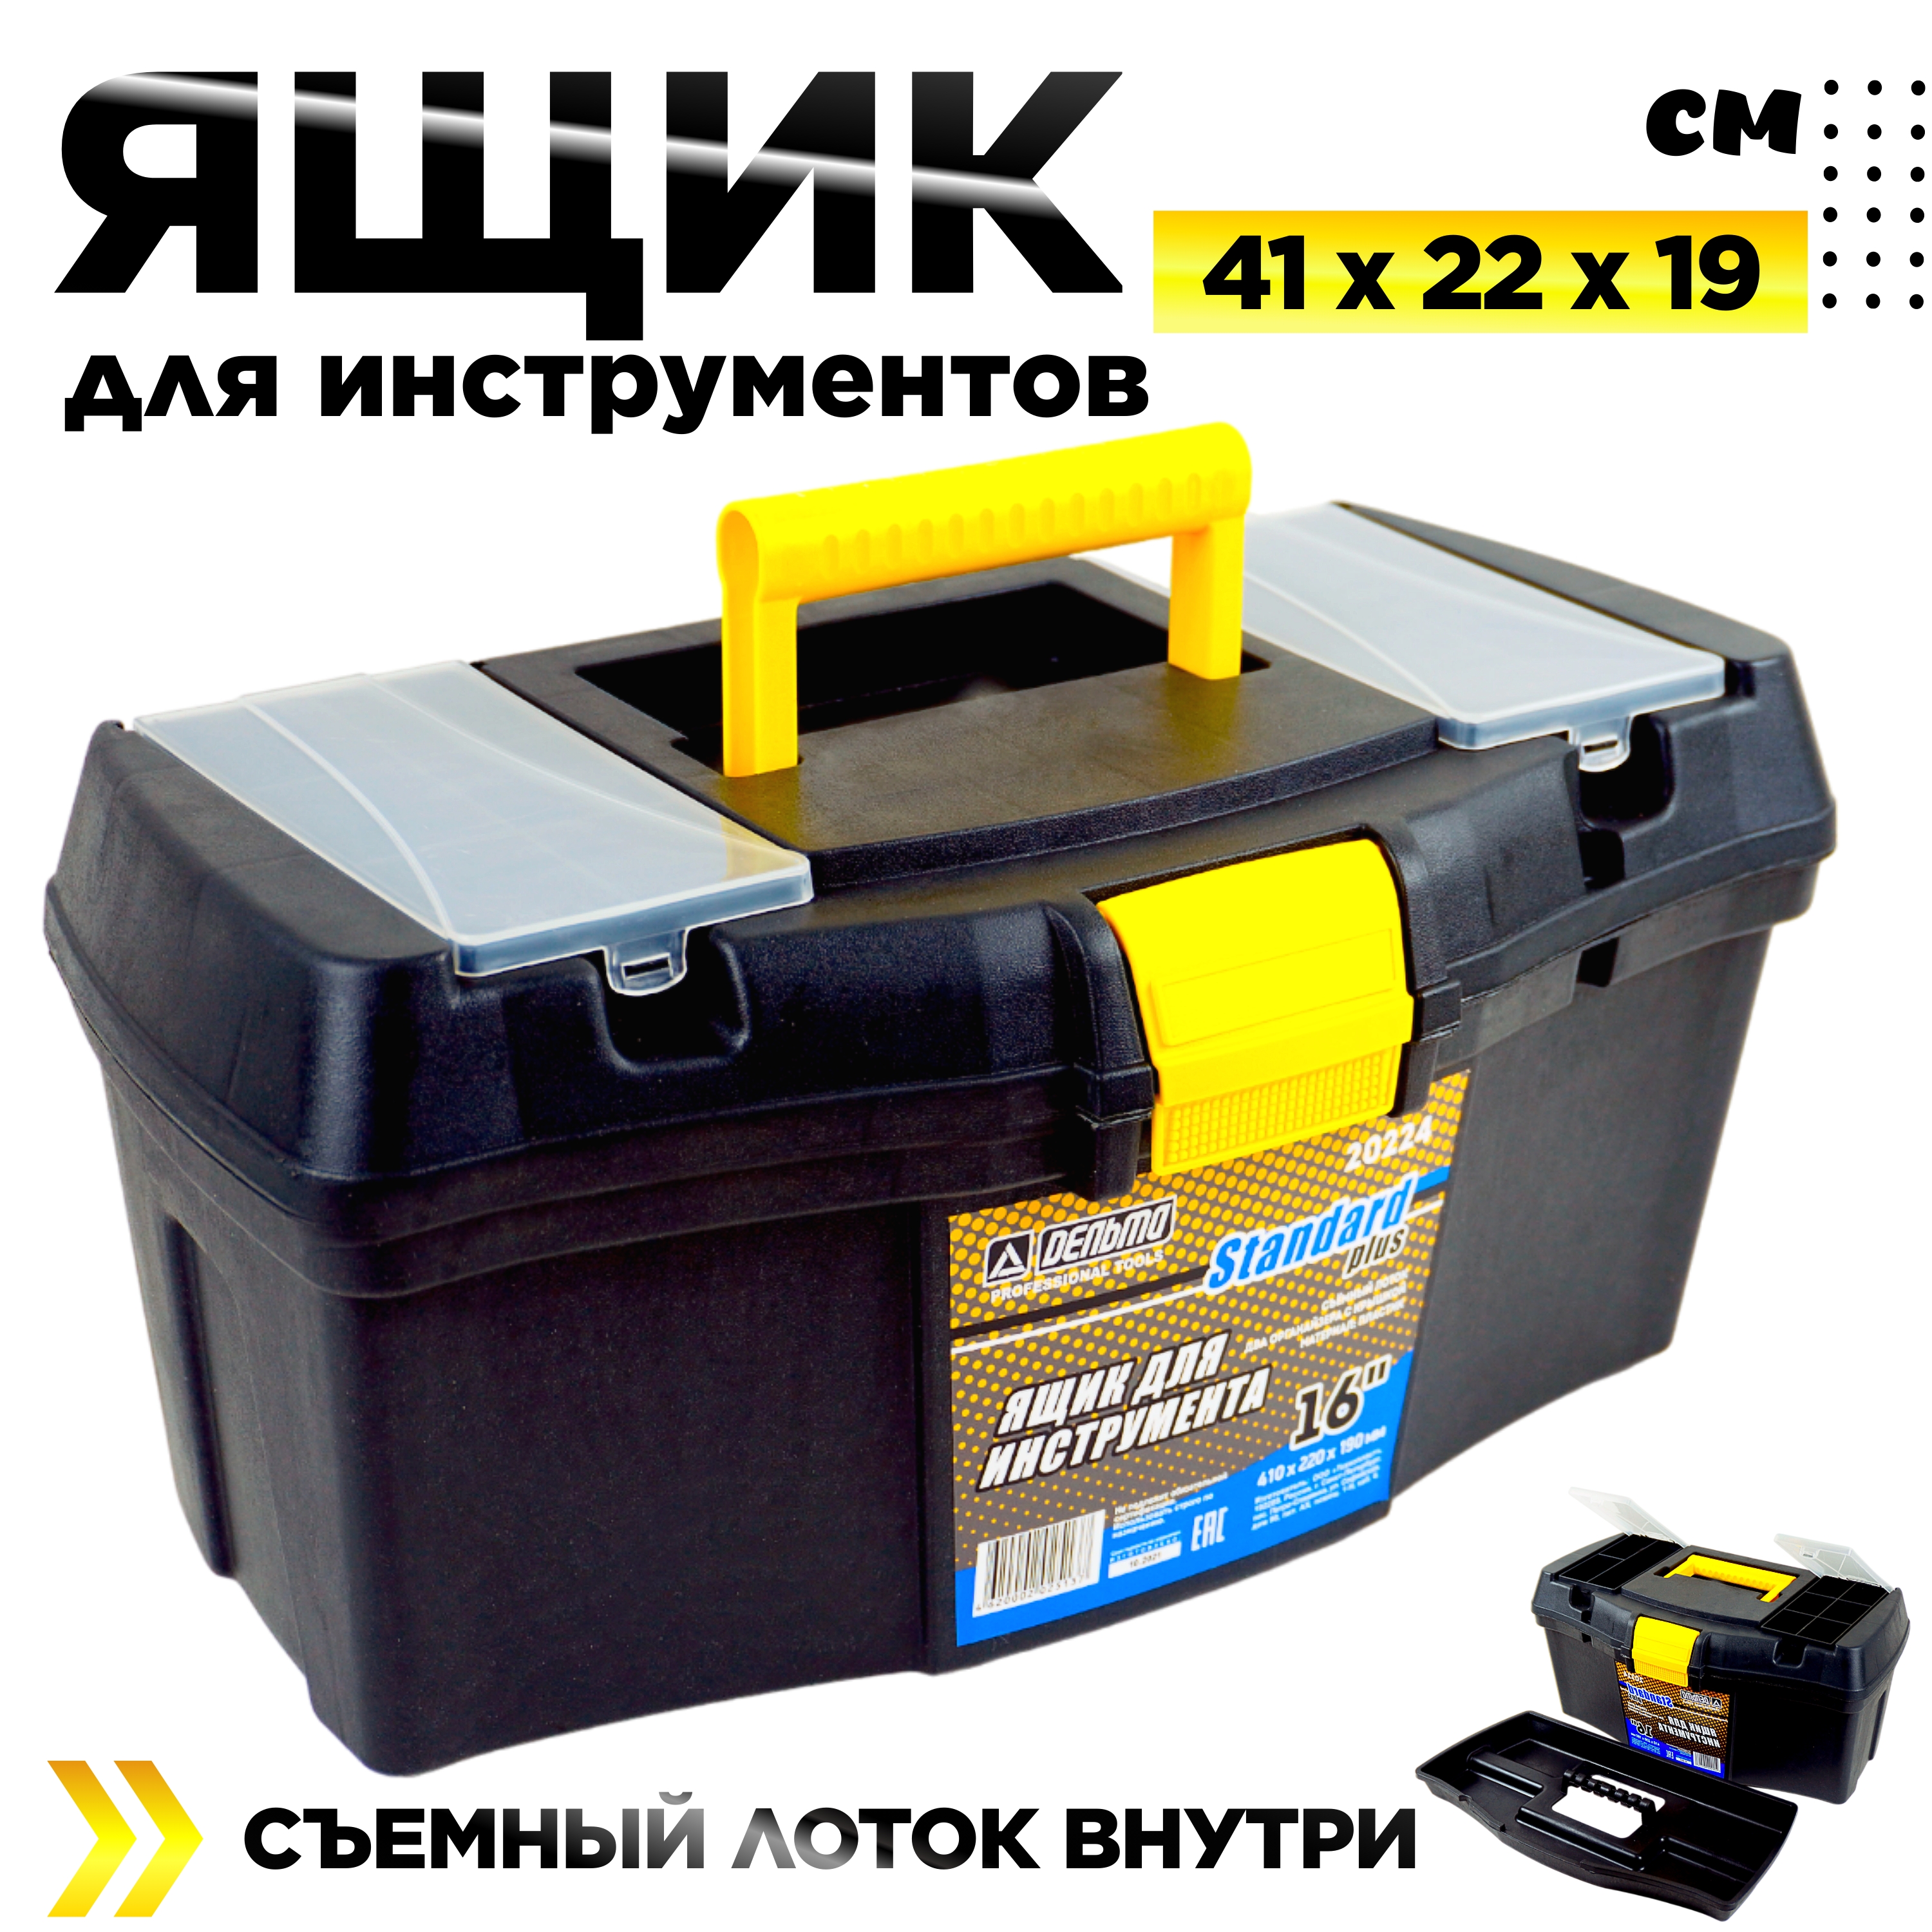 Ящик для инструментов Дельта Стандарт Плюс 16 дюймов 410 х 220 х 190 мм